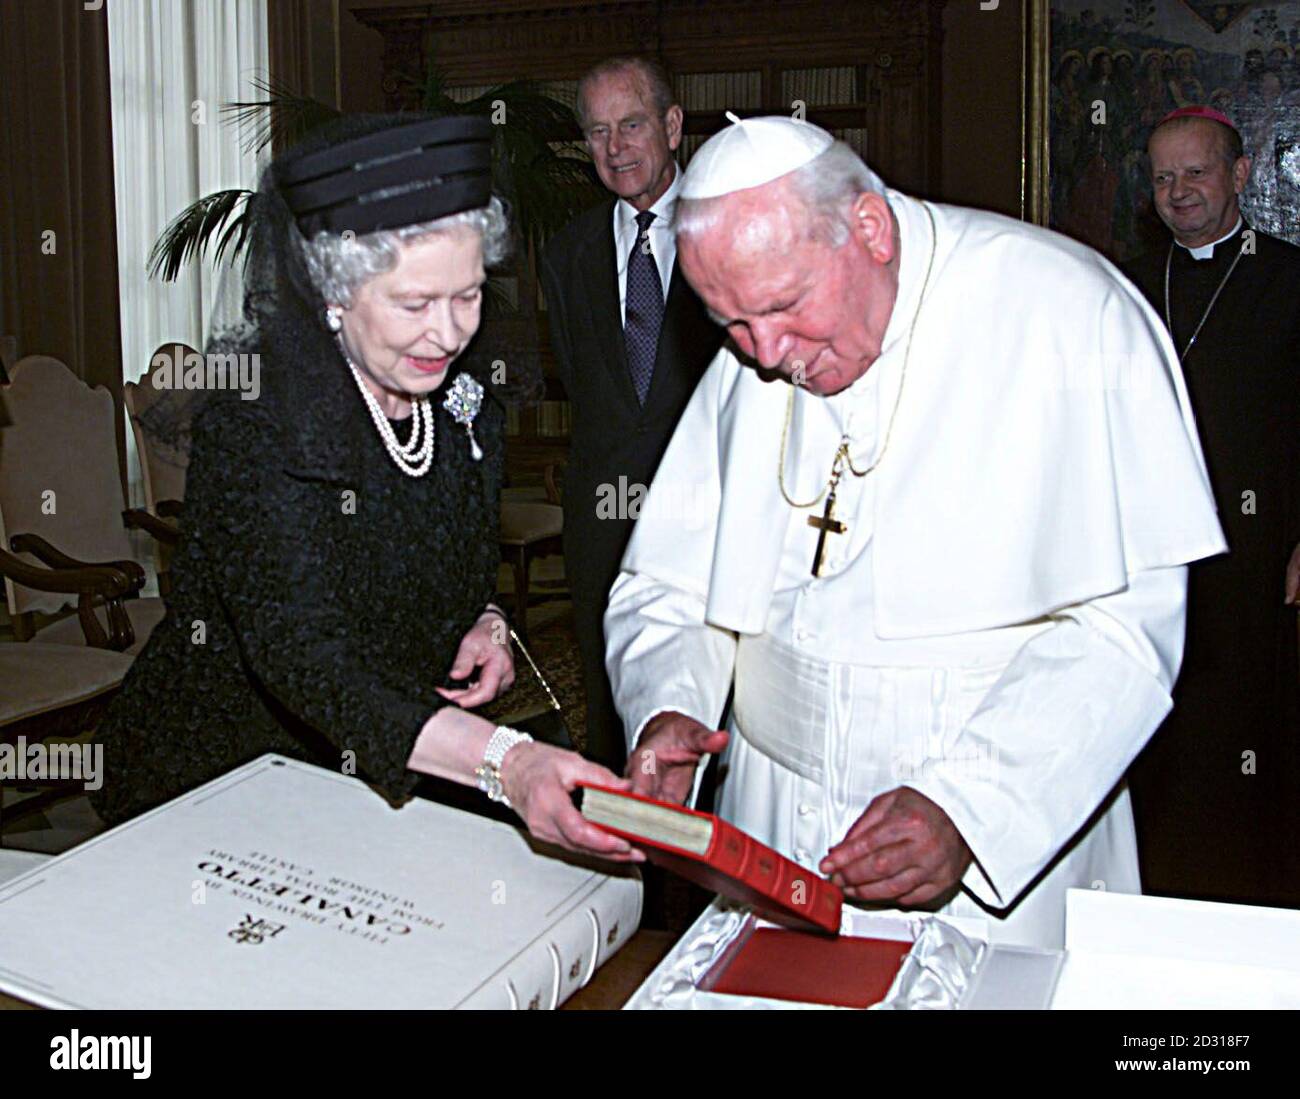 Les échanges de la reine Elizabeth II de Grande-Bretagne se présentent avec le pape Jean-Paul II lors d'un auditoire au Vatican à Rome, en Italie. *vêtue de noir et vêtue d'un voile, la Reine a été accueillie par le chef de l'Église catholique romaine, âgé de 80 ans, à la porte de son étude. Au cours d'une réunion privée de 20 minutes, on pense qu'ils ont discuté des progrès vers l'unité chrétienne et des problèmes en Irlande du Nord. La Reine est arrivée à Rome lundi au début d'une visite d'État de quatre jours en Italie. Banque D'Images